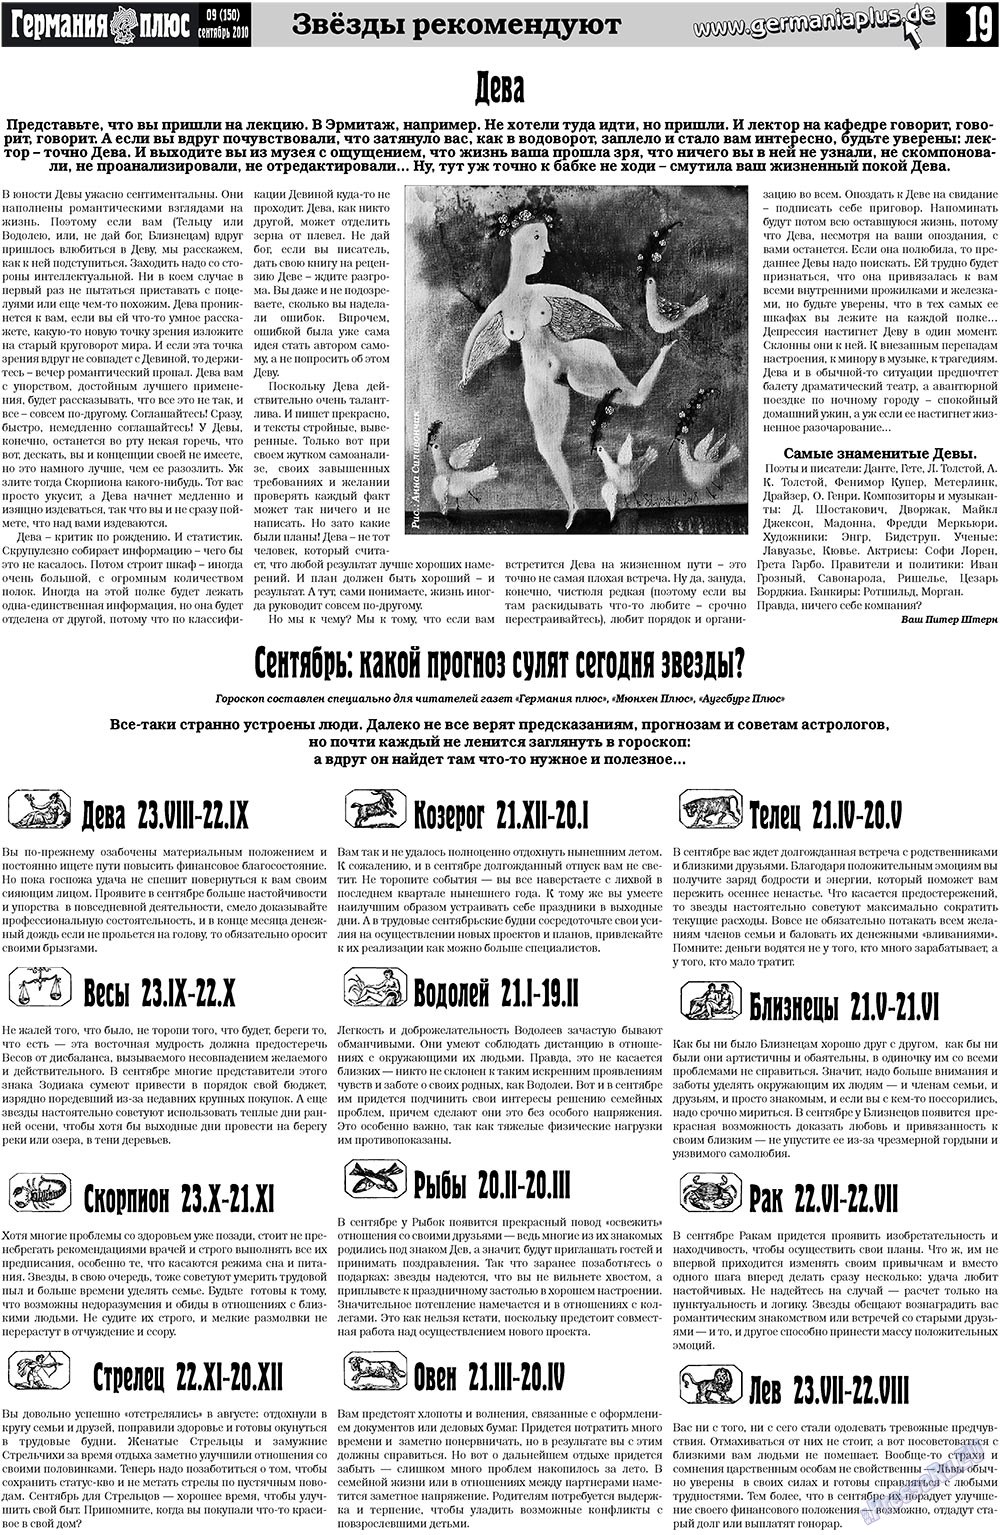 Германия плюс, газета. 2010 №9 стр.19